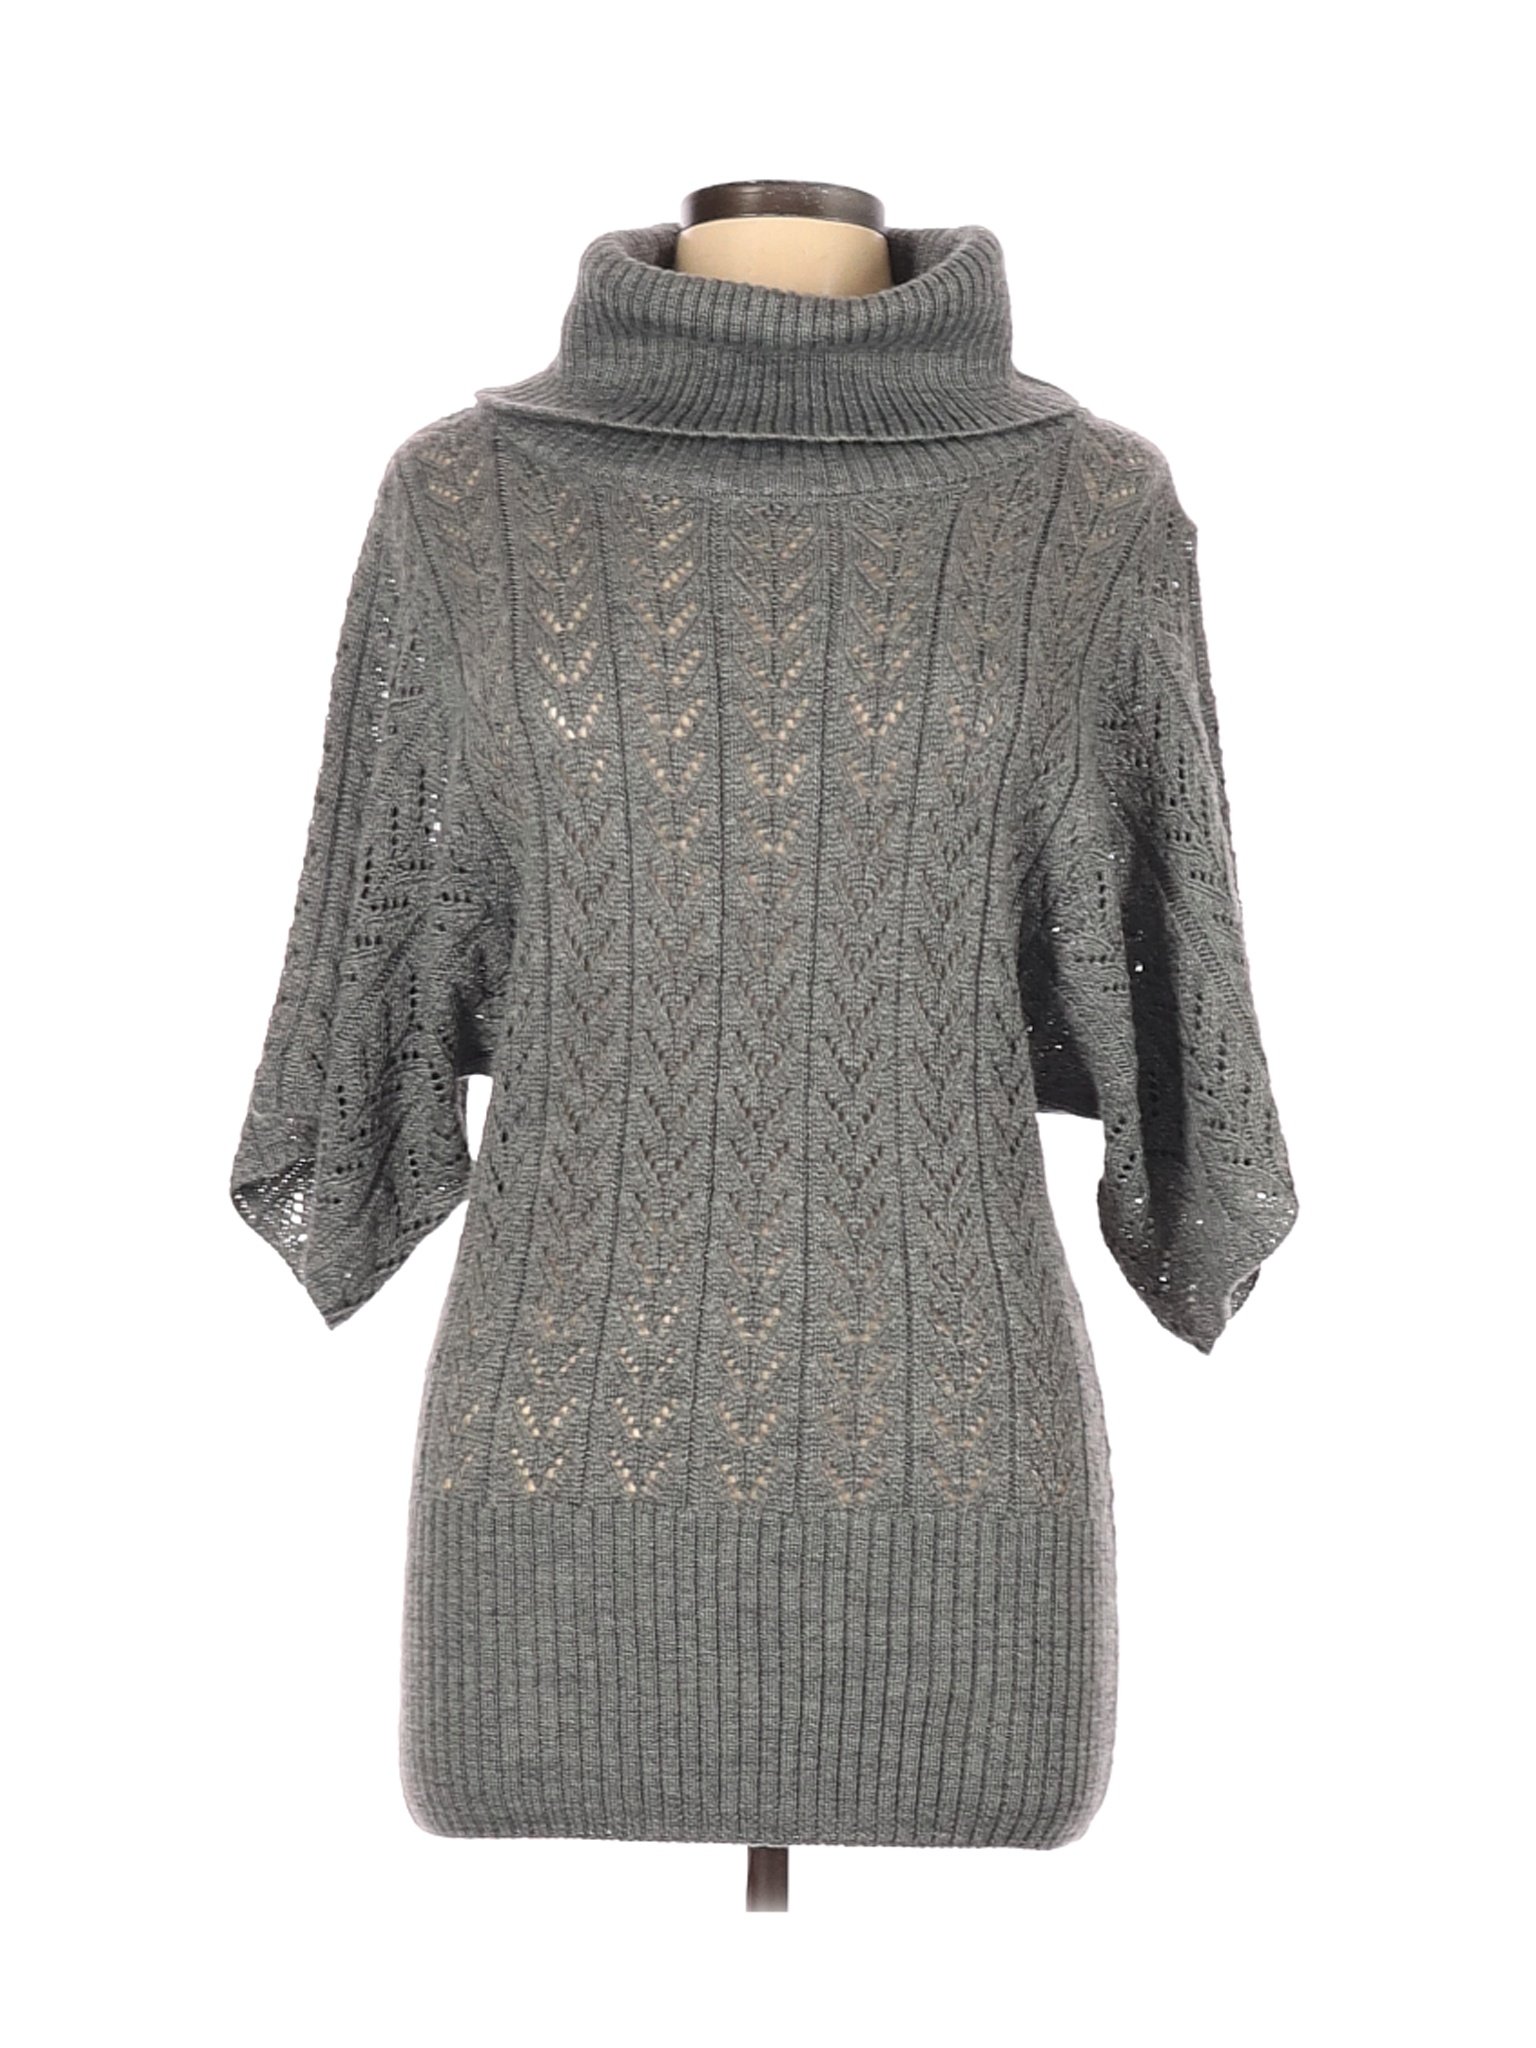 Adrienne Vittadini Women Gray Pullover Sweater L | eBay